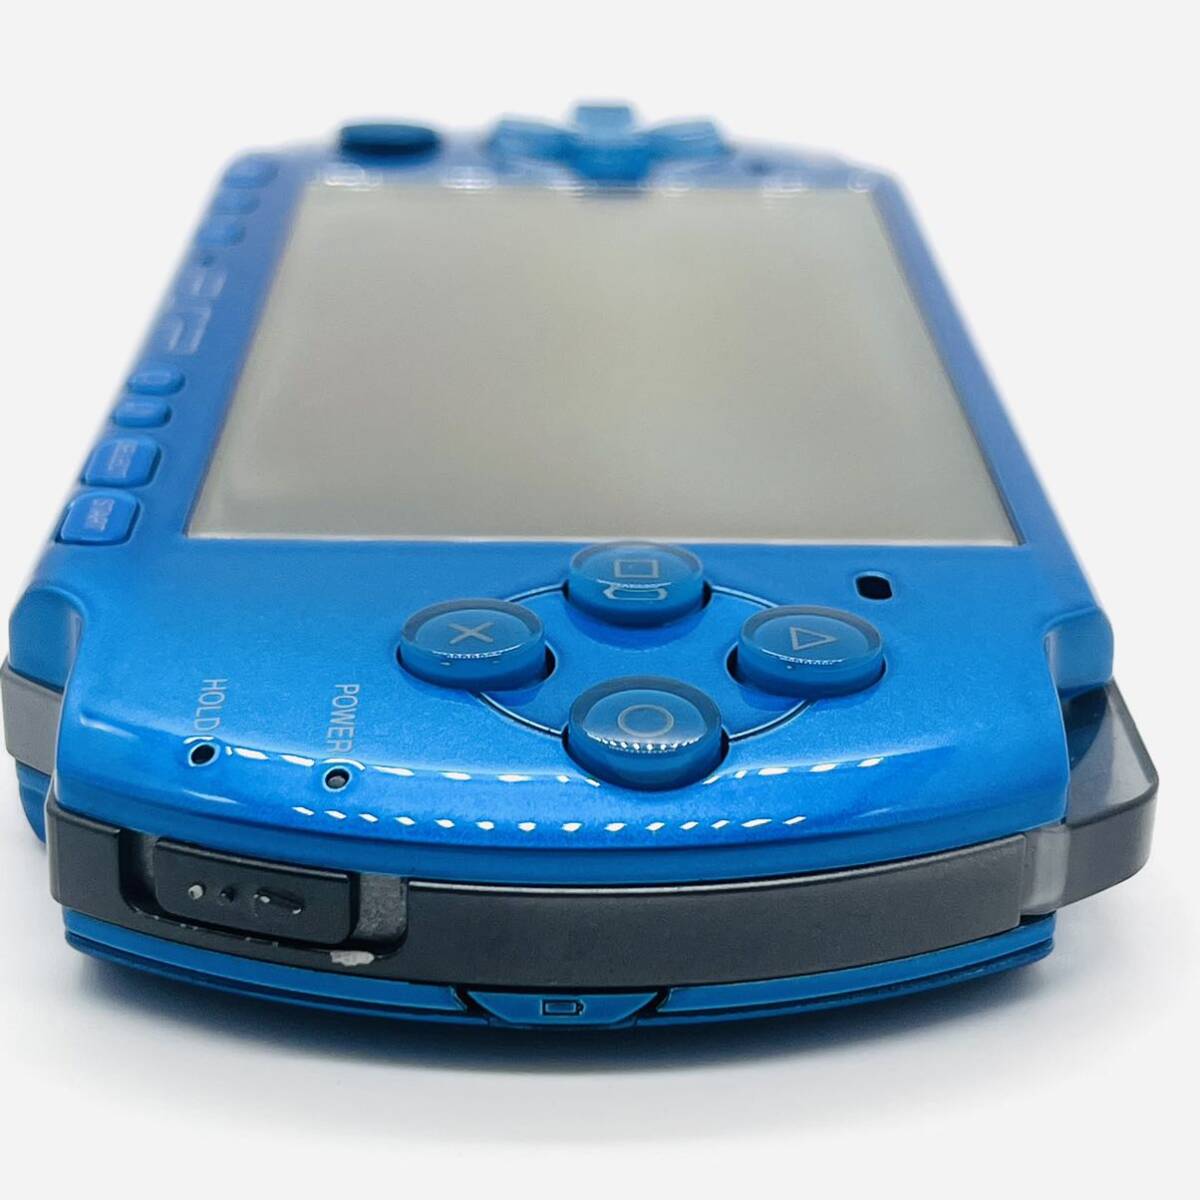 [ рабочий товар ]SONY PSP-3000/ синий голубой / Sony 